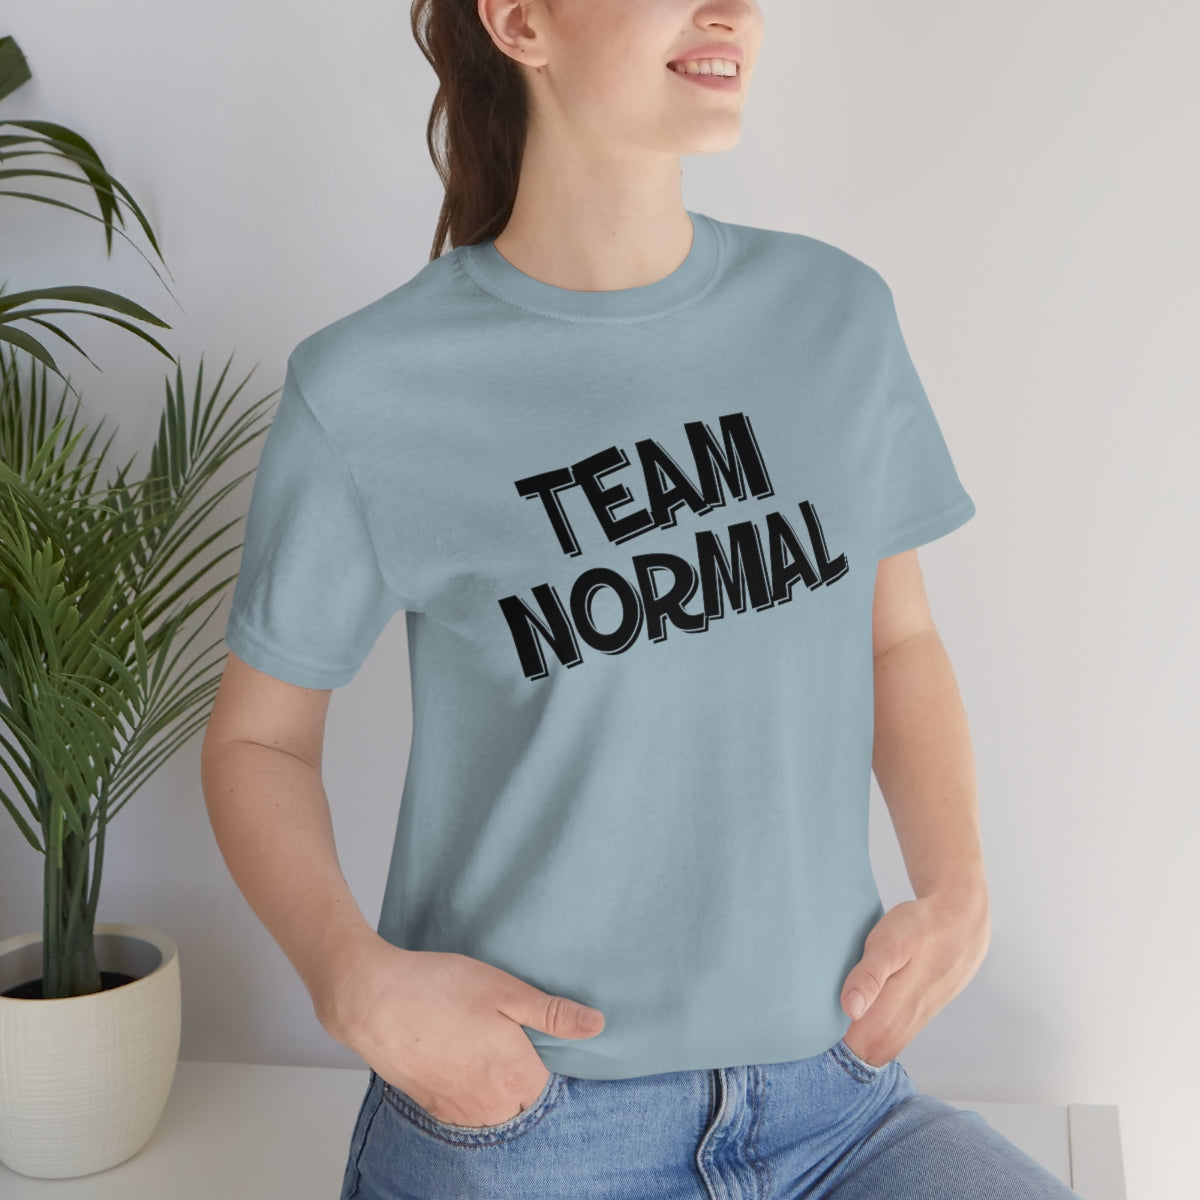 * Team Normal Official Unisex T-Shirt!